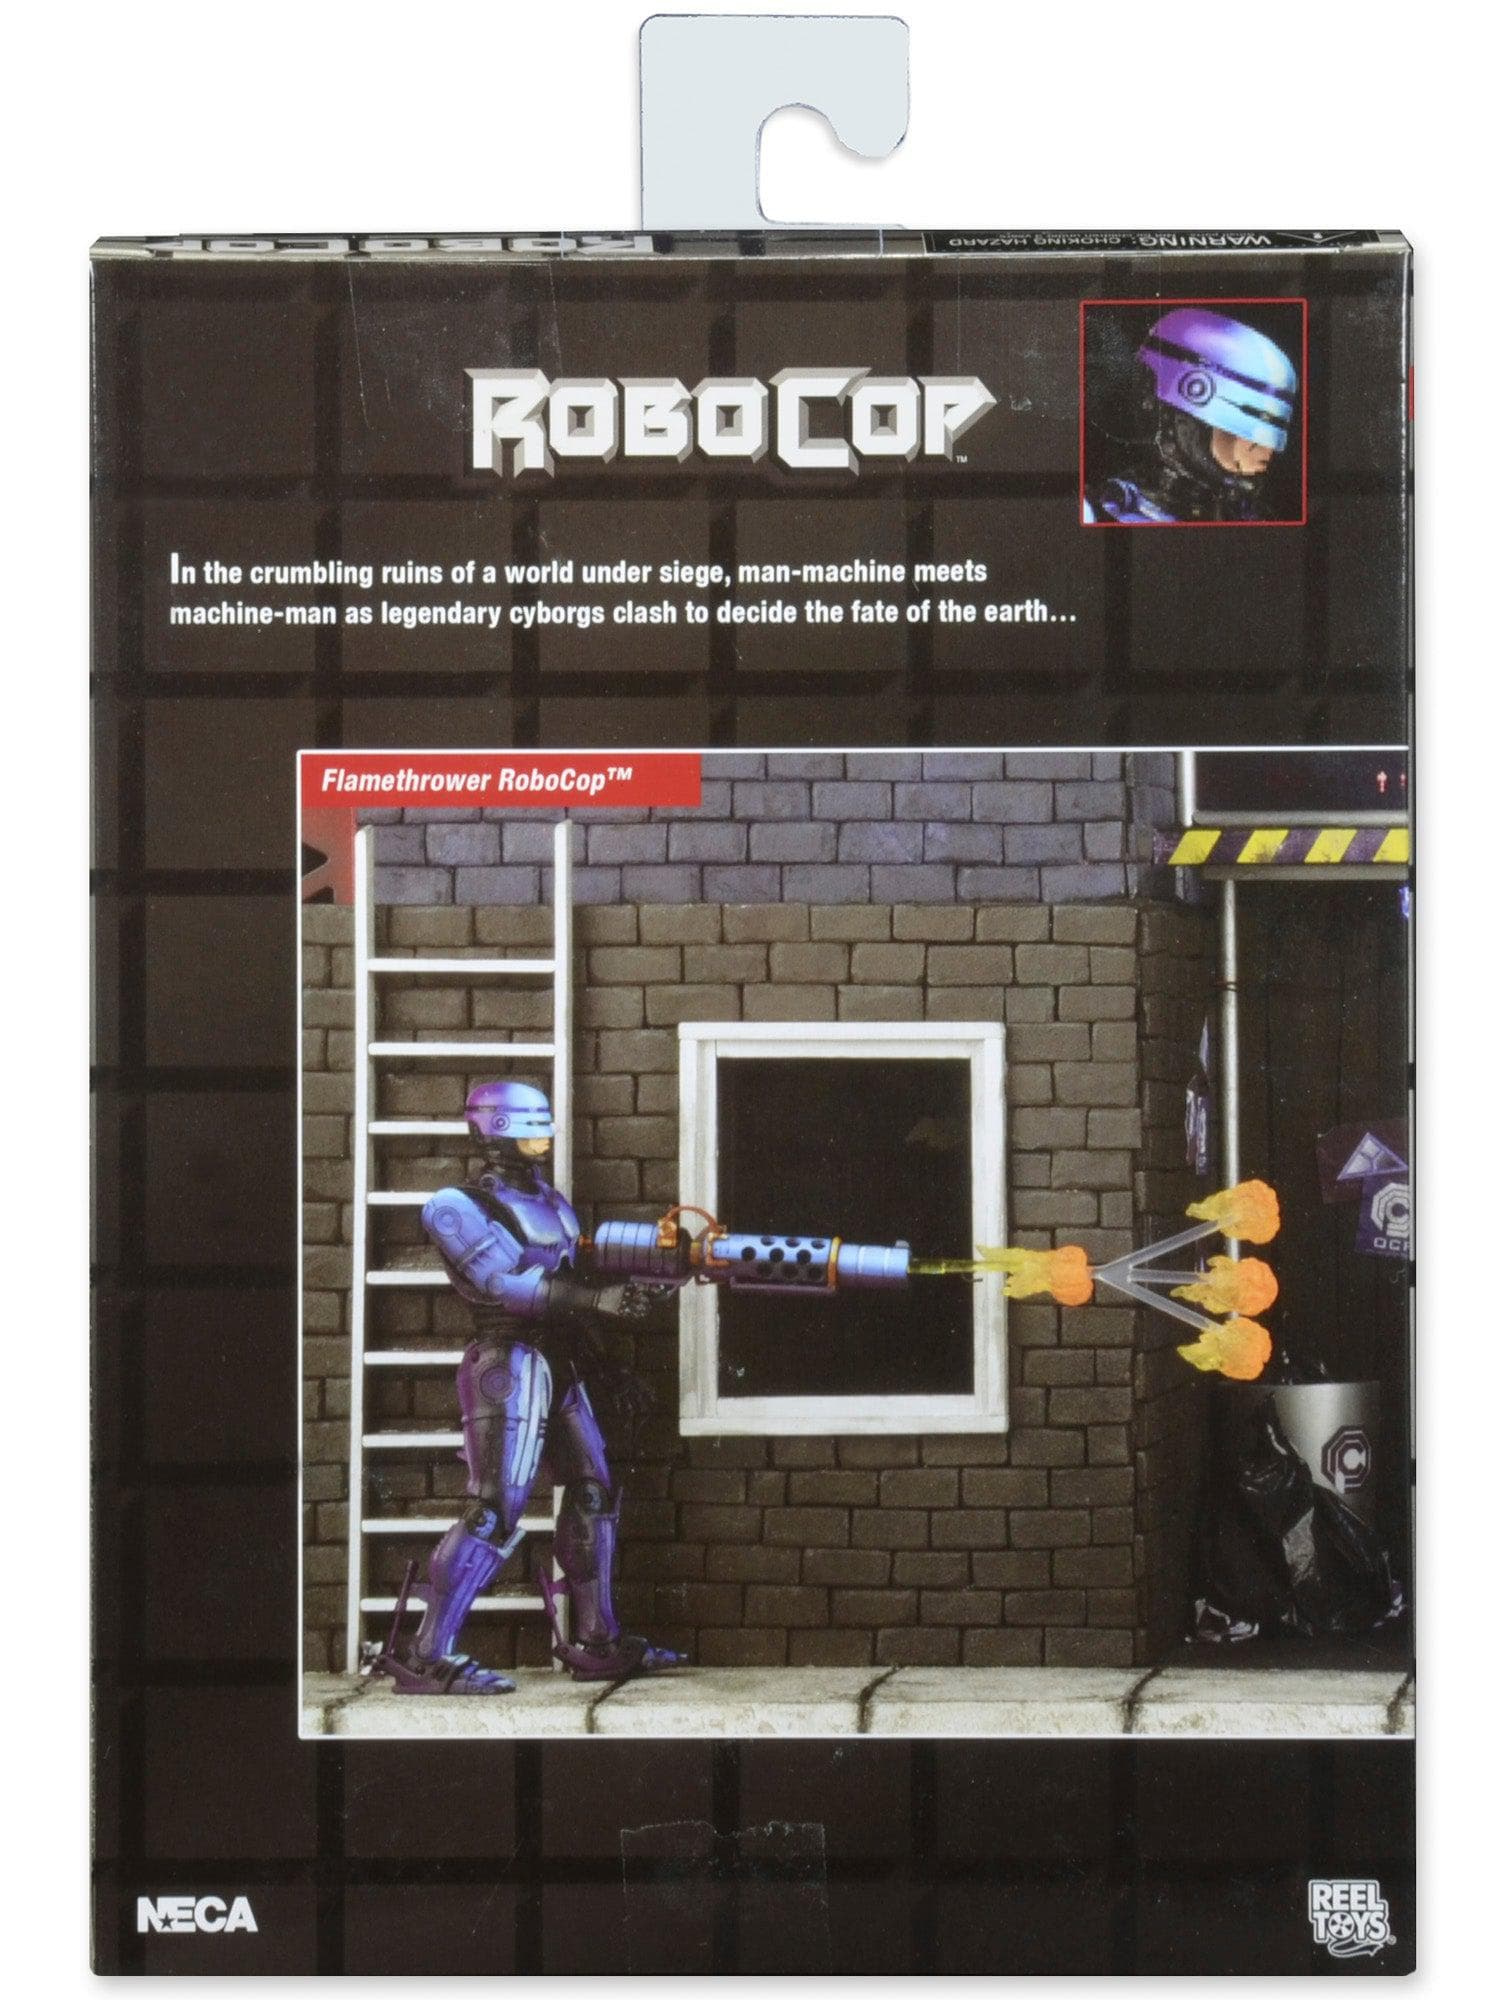 NECA - Robocop Vs Terminator (93' Video Game) - 7" Scale Action Figure - Series 2 Robocop w/ Flamethrower - costumes.com